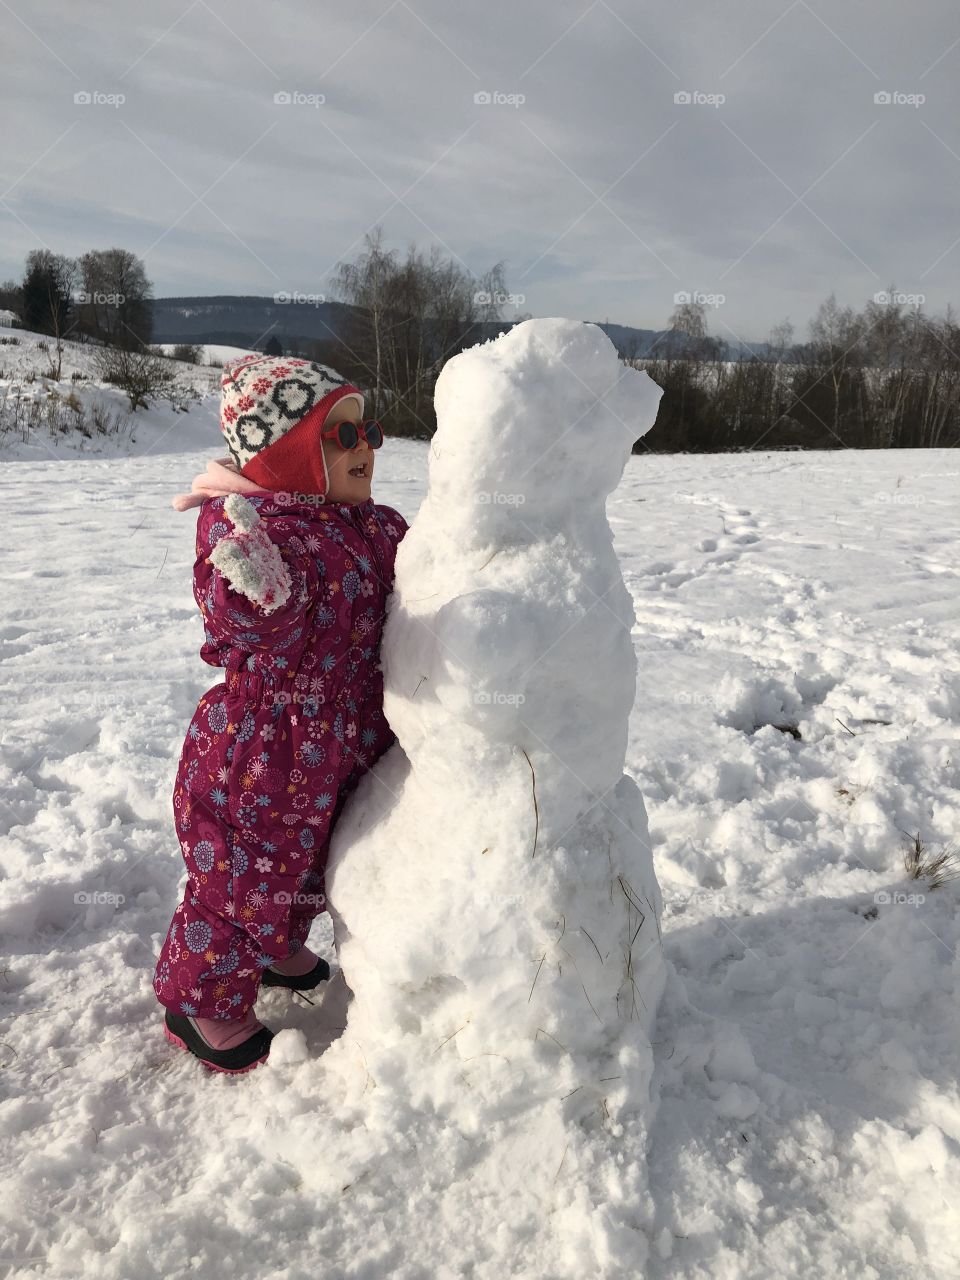 friendship between a little girl and a snowman